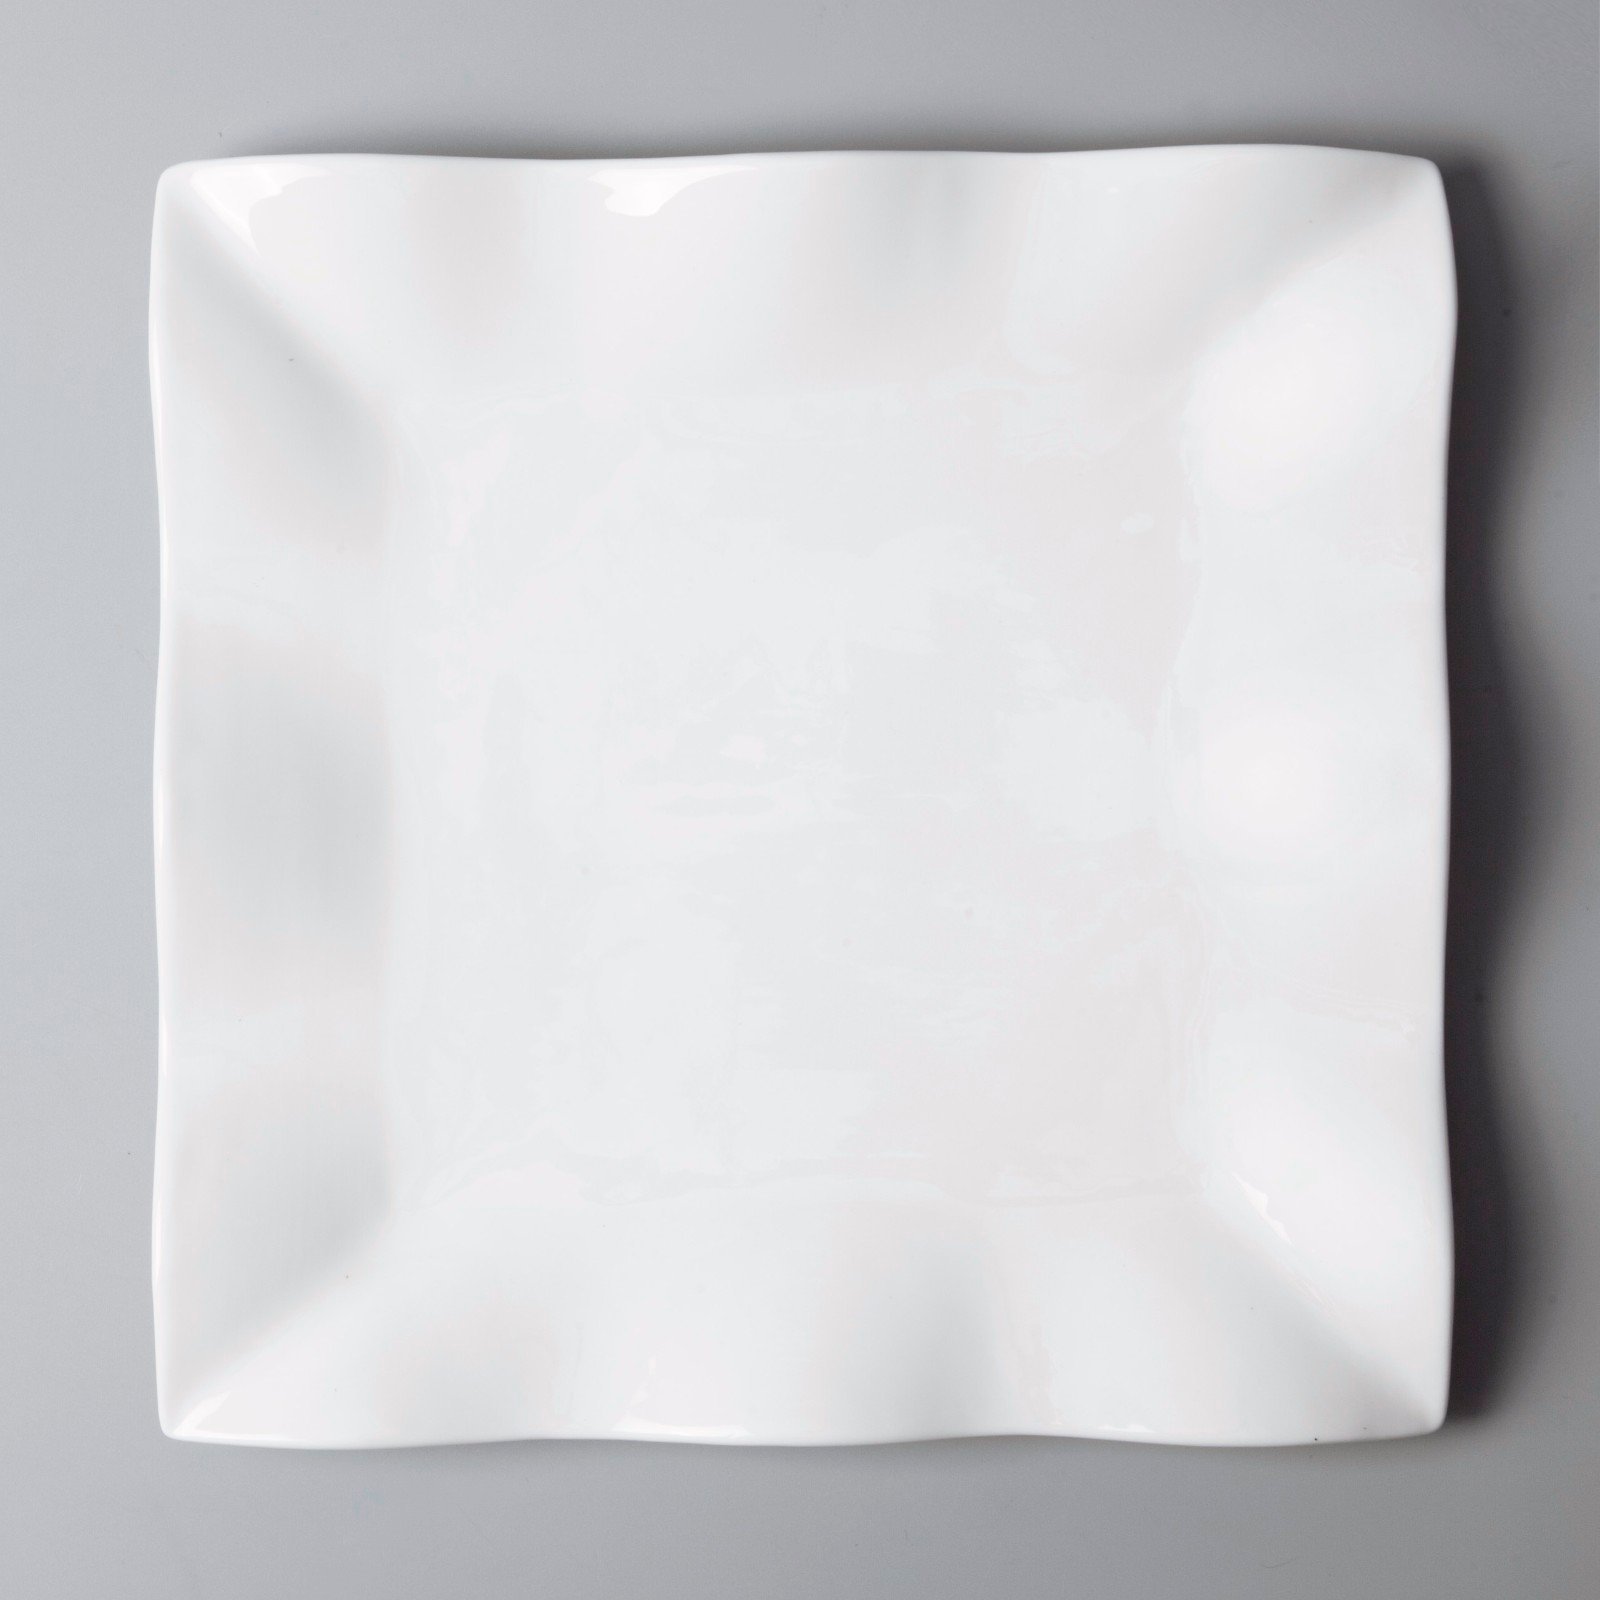 white porcelain tableware meng porcelain Bulk Buy vietnamese Two Eight